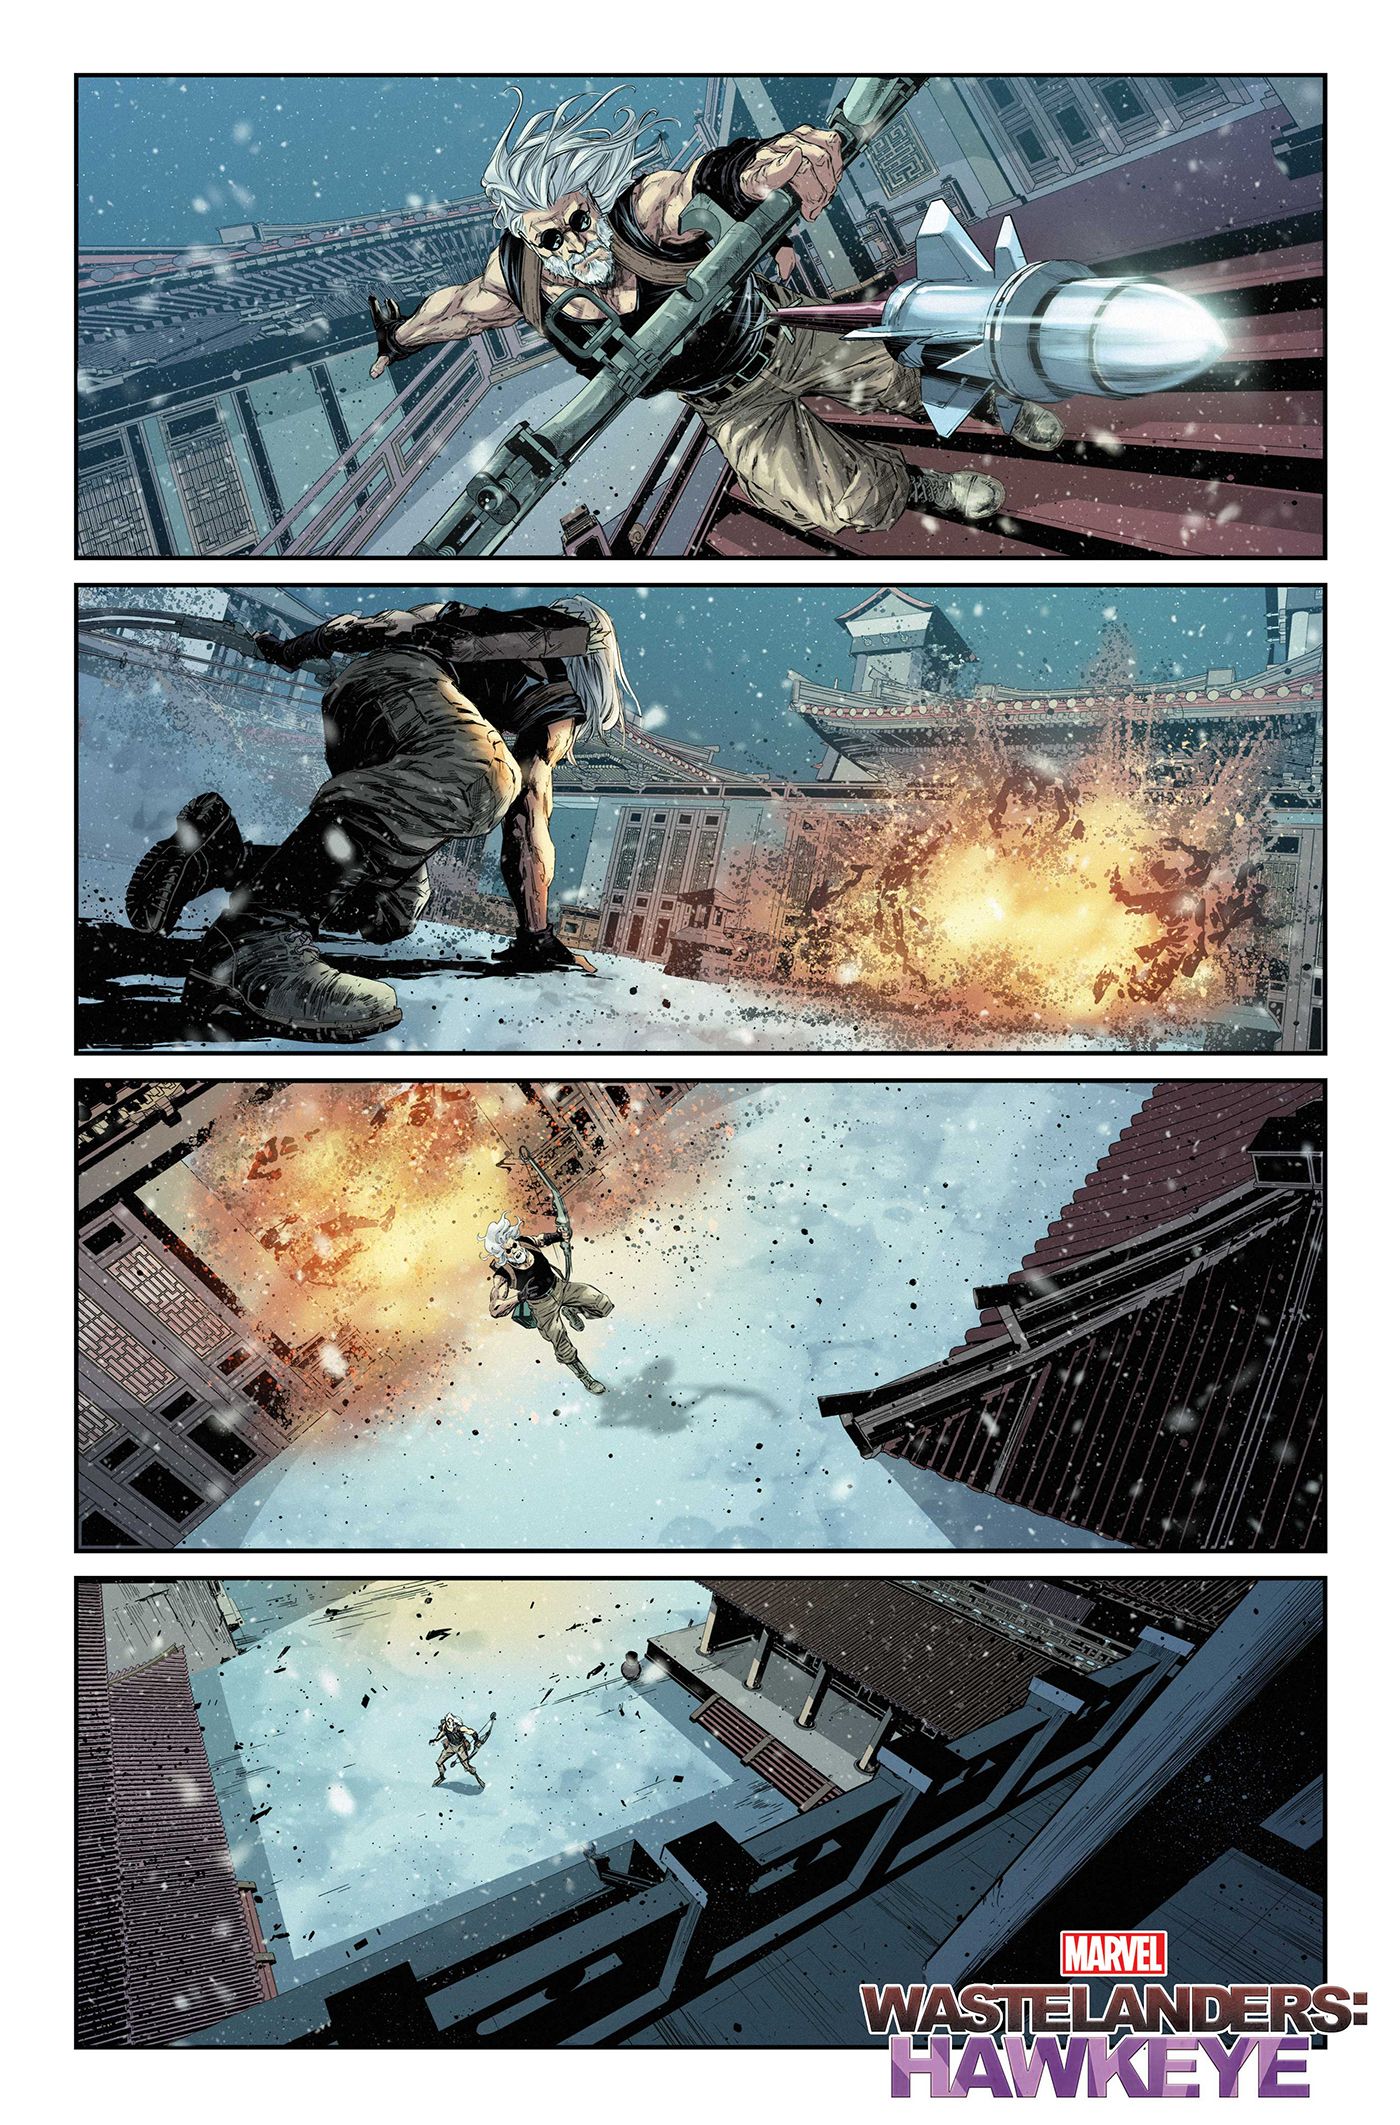 Hawkeye uses an explosive arrow to blow open the temple door.